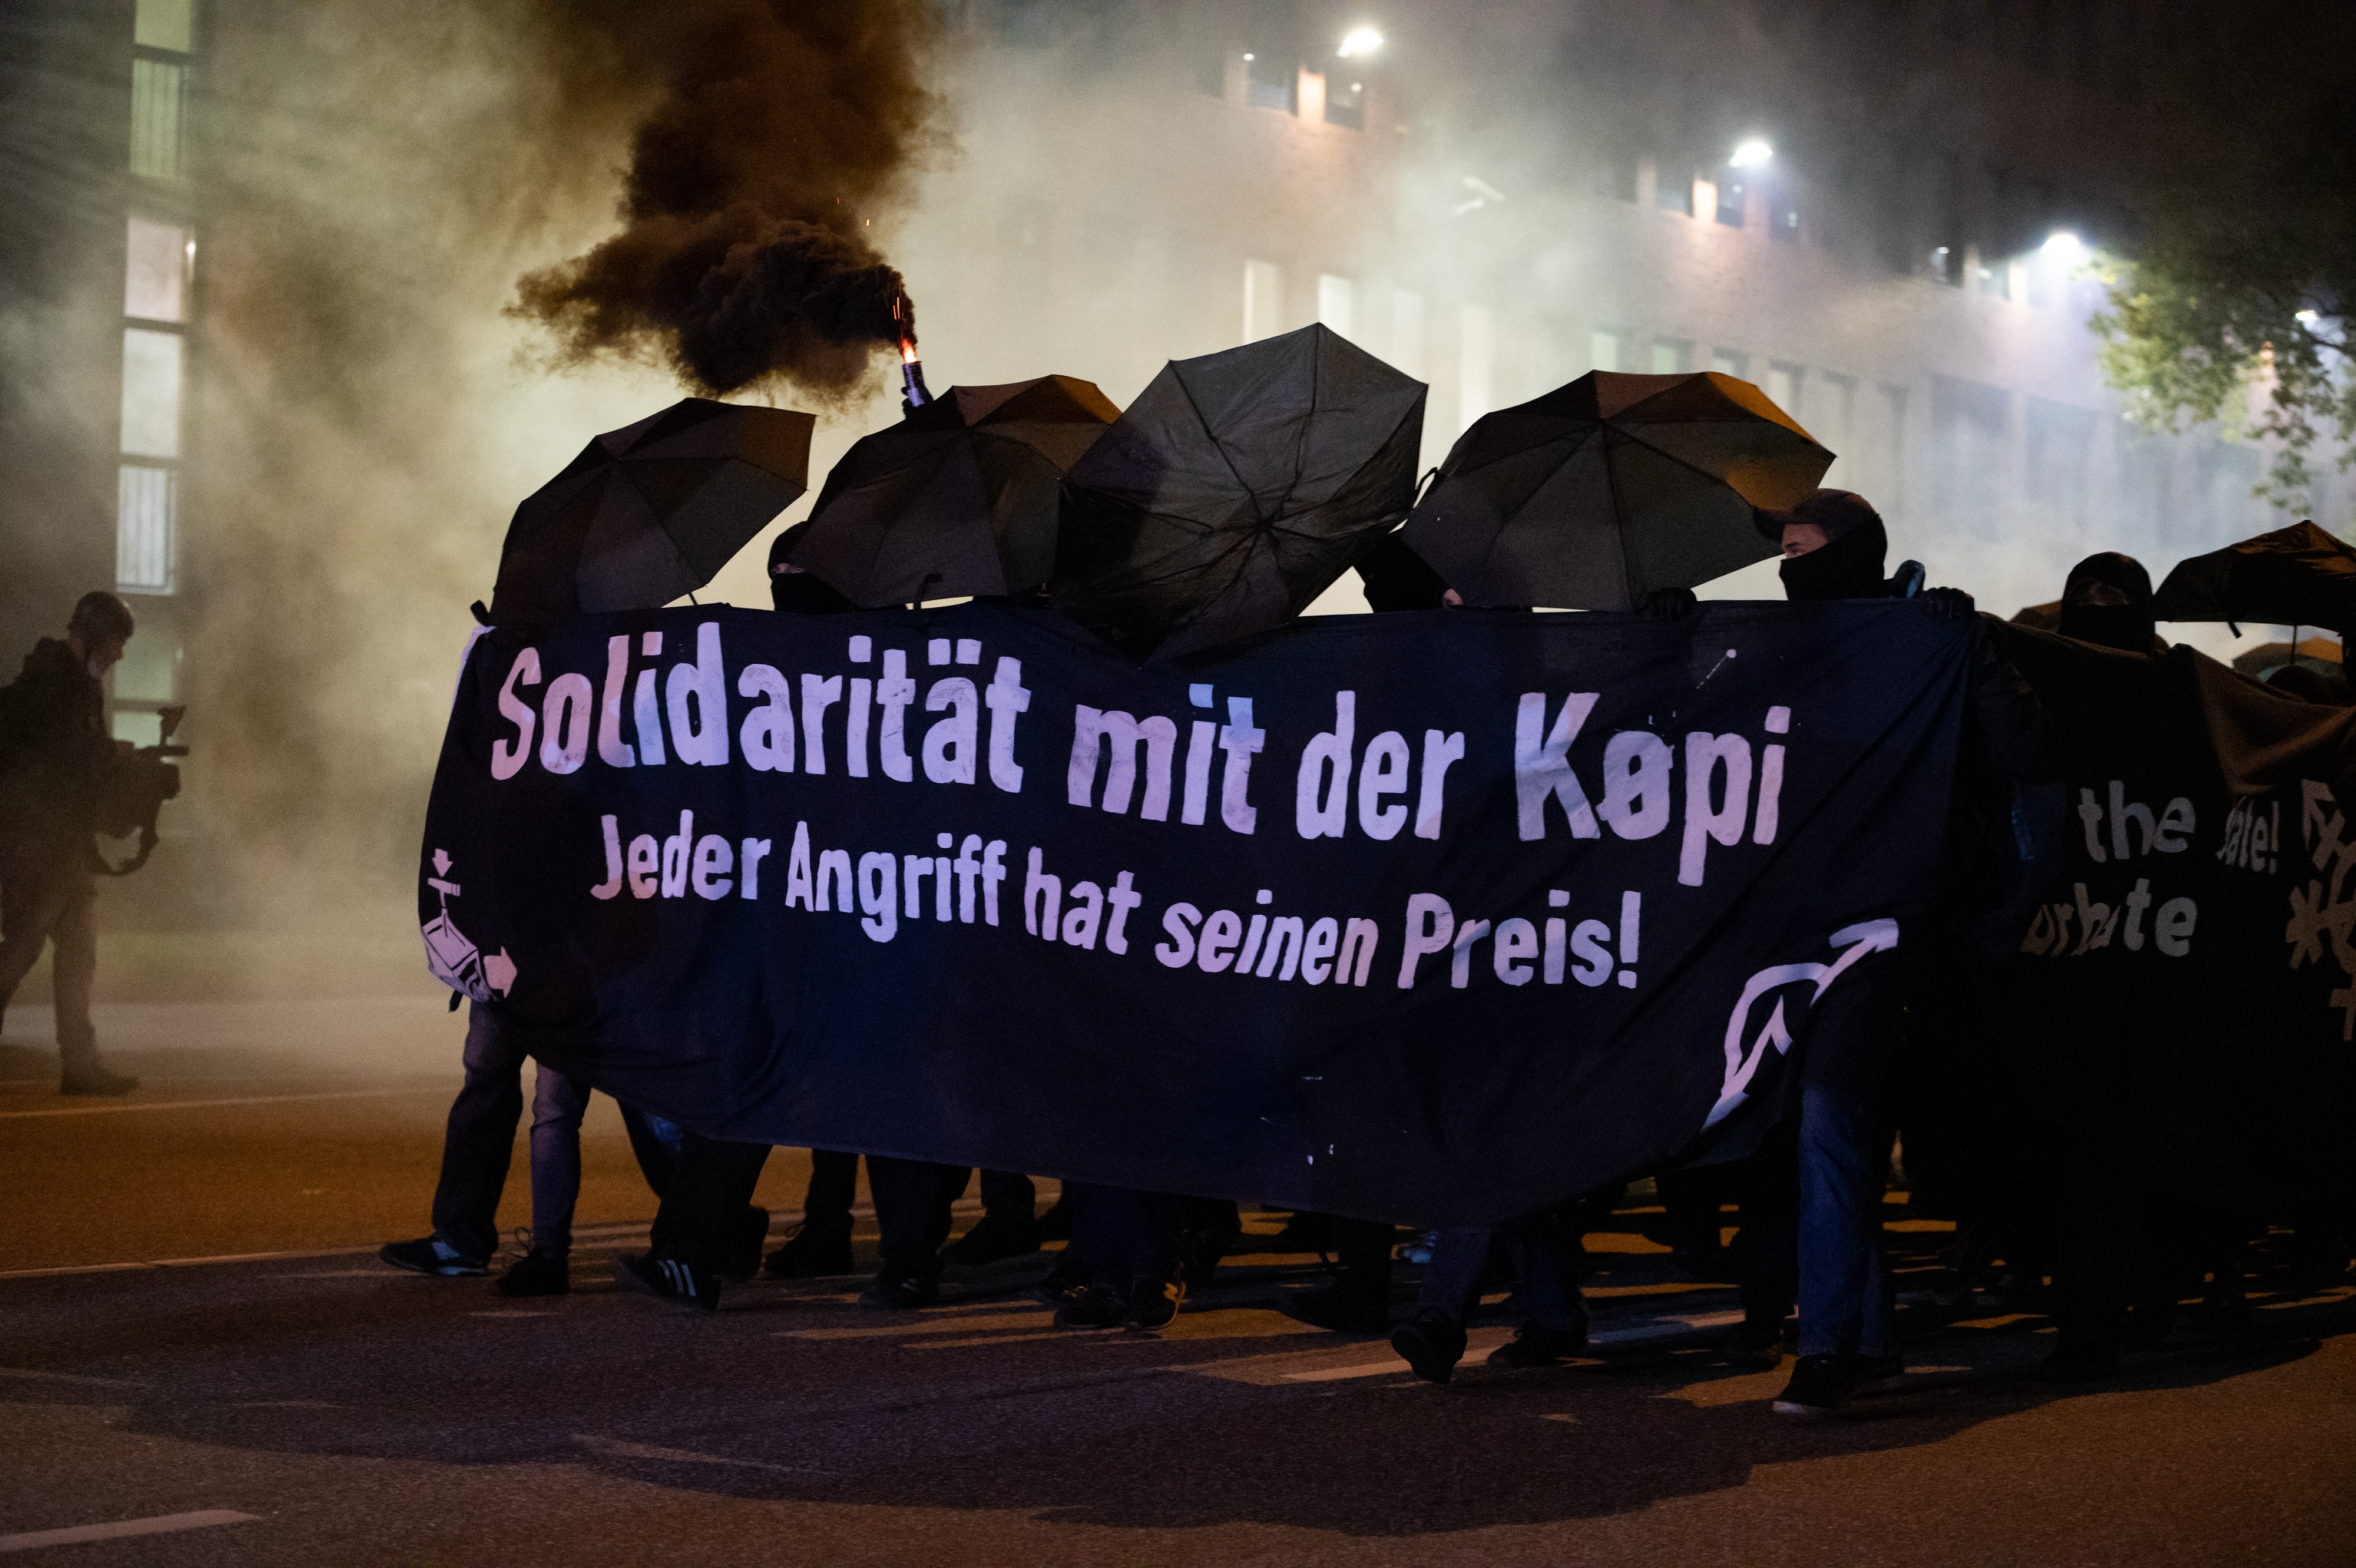 Demonstrierende Personen am 15.10.2021 in Berlin mit einem schwarzen Transparent und der Aufschrift "Solidarität mit der Köpi"